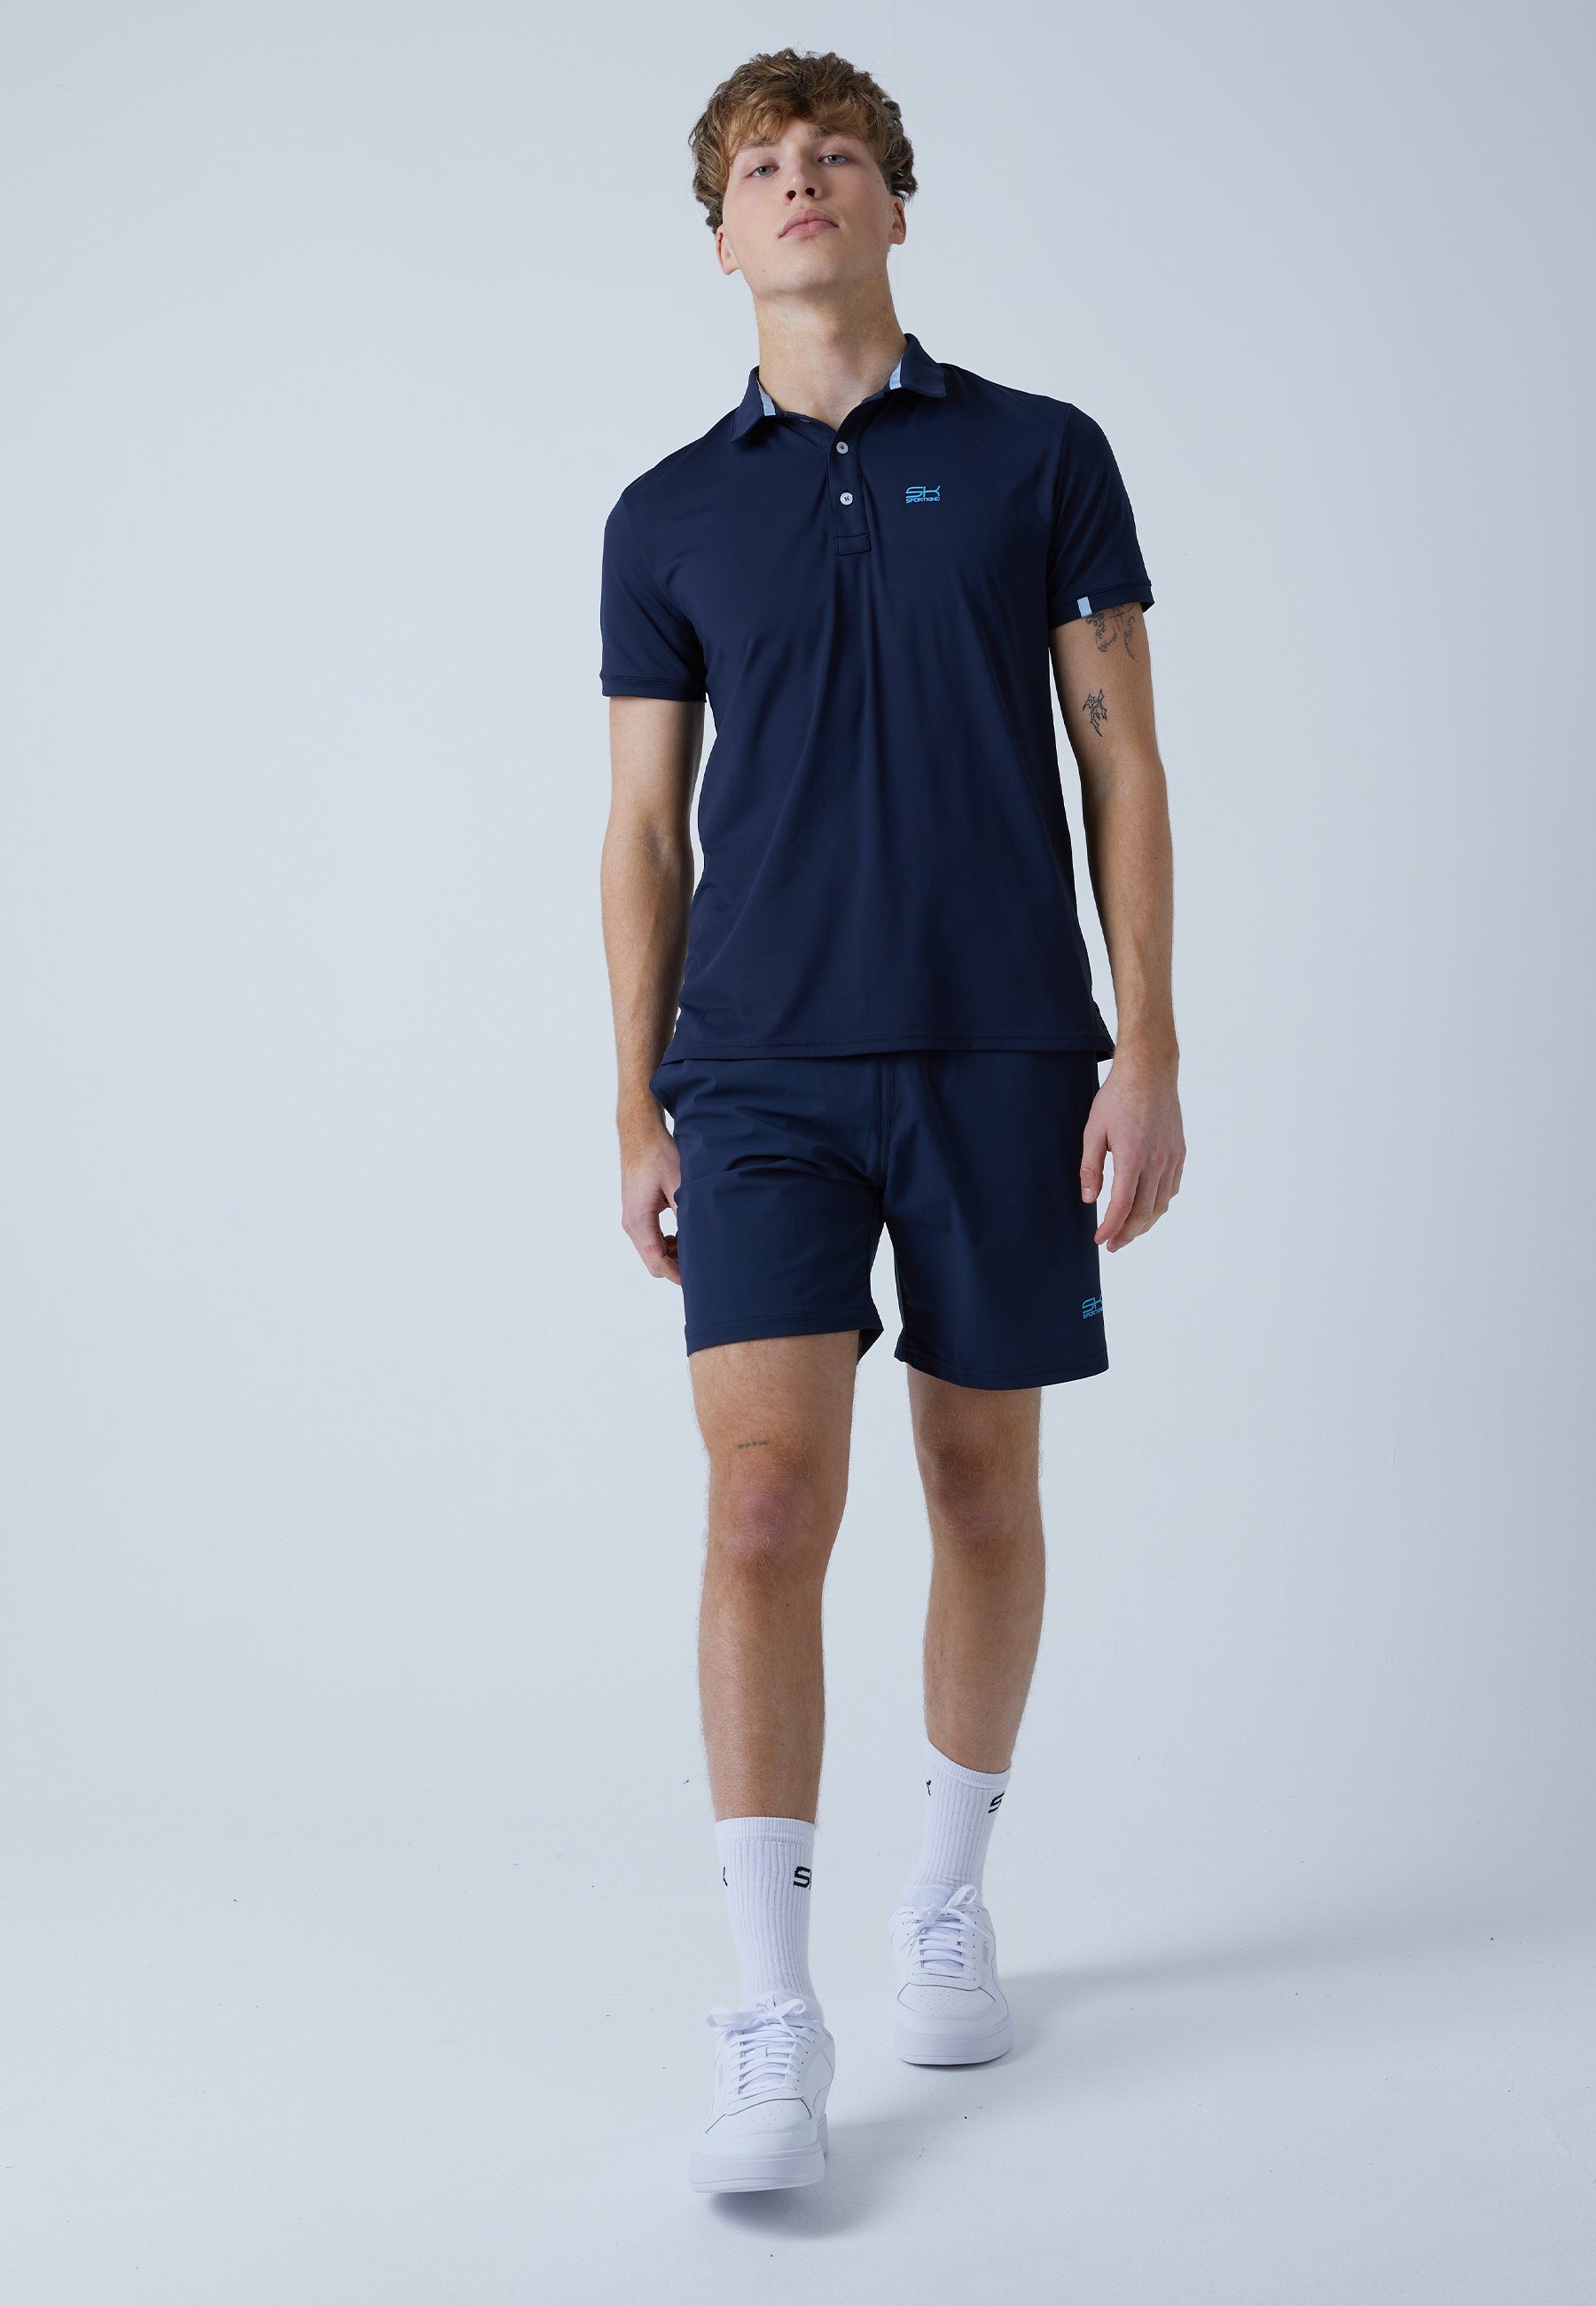 Polo navy Herren SPORTKIND Shirt & Funktionsshirt Kurzarm blau Golf Jungen